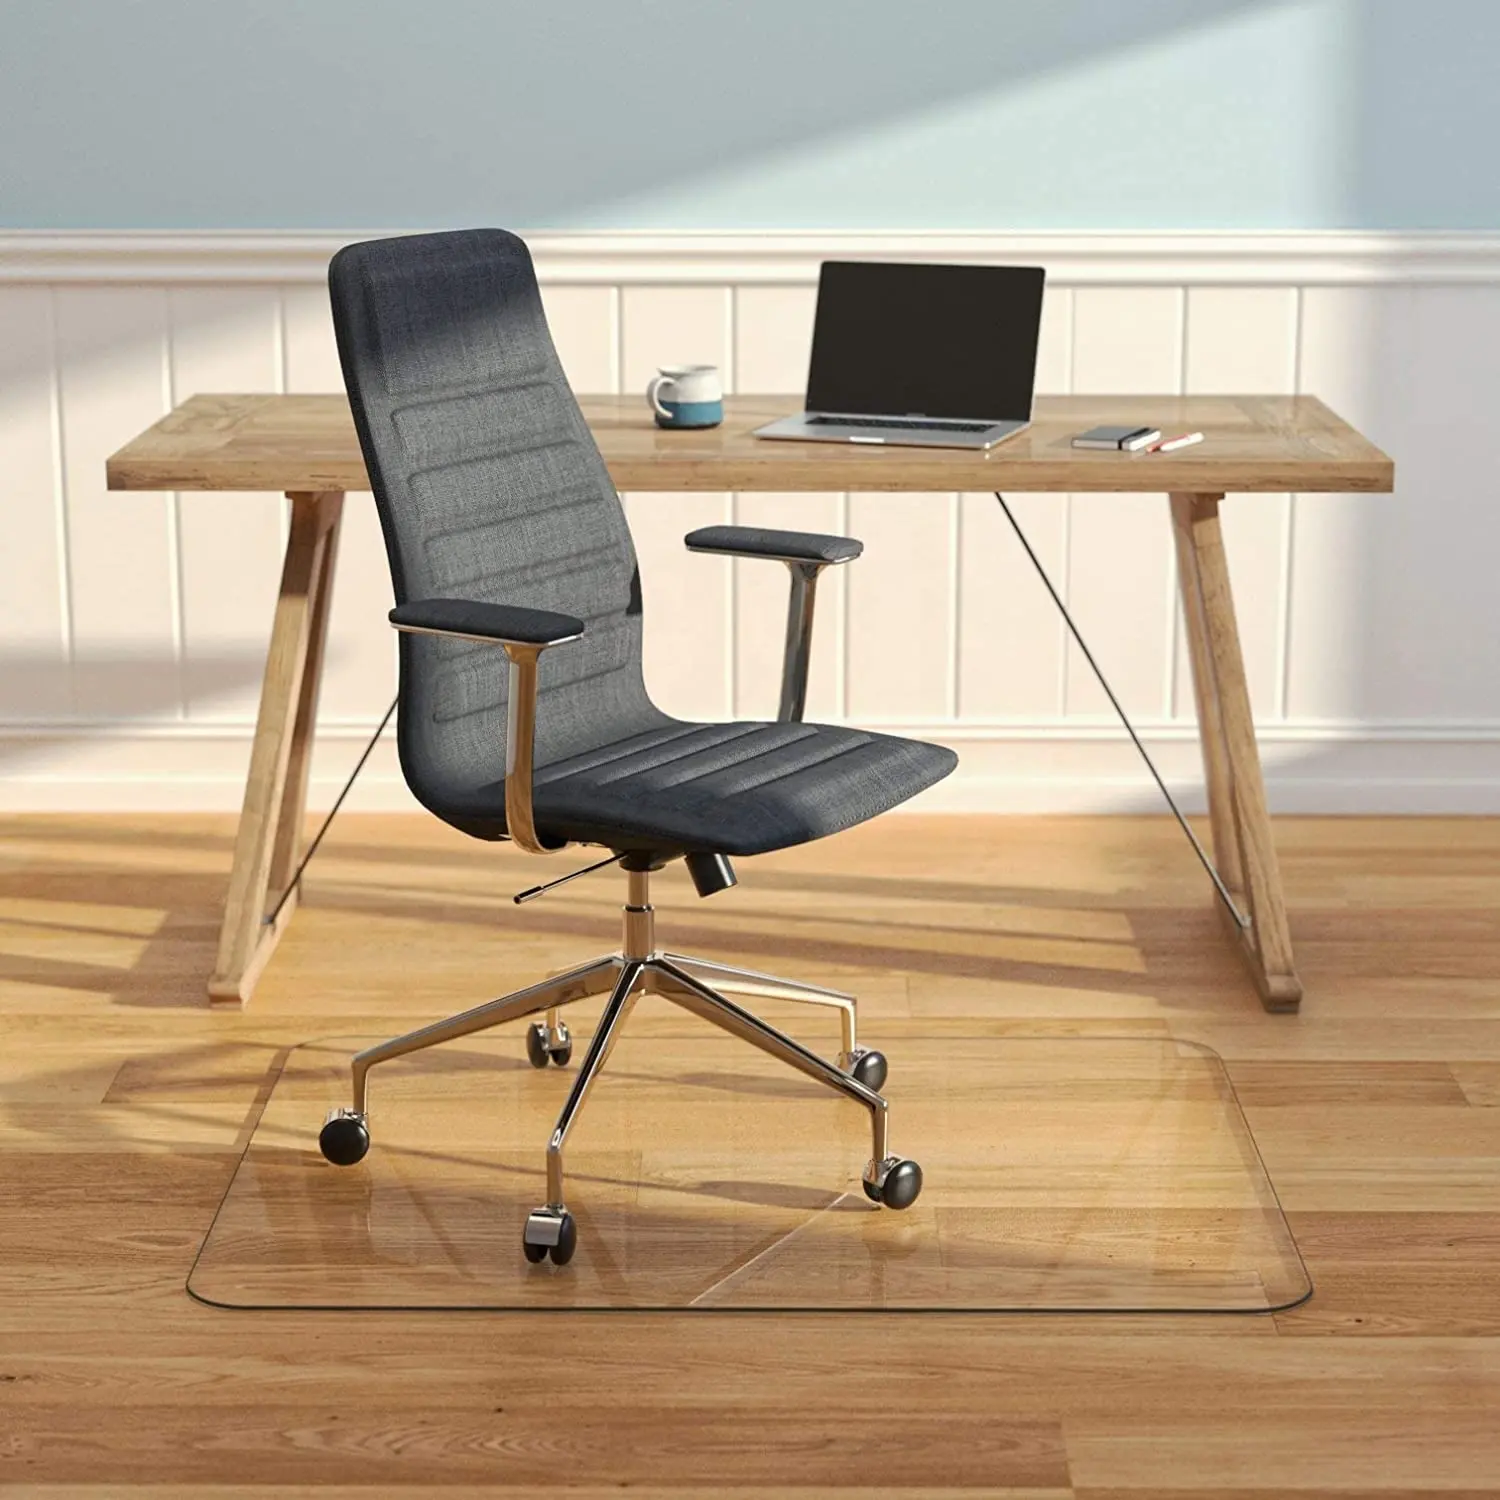 Tapis de chaise en verre Protecteur de sol en bois dur Tapis de sol en verre trempé pour bureau